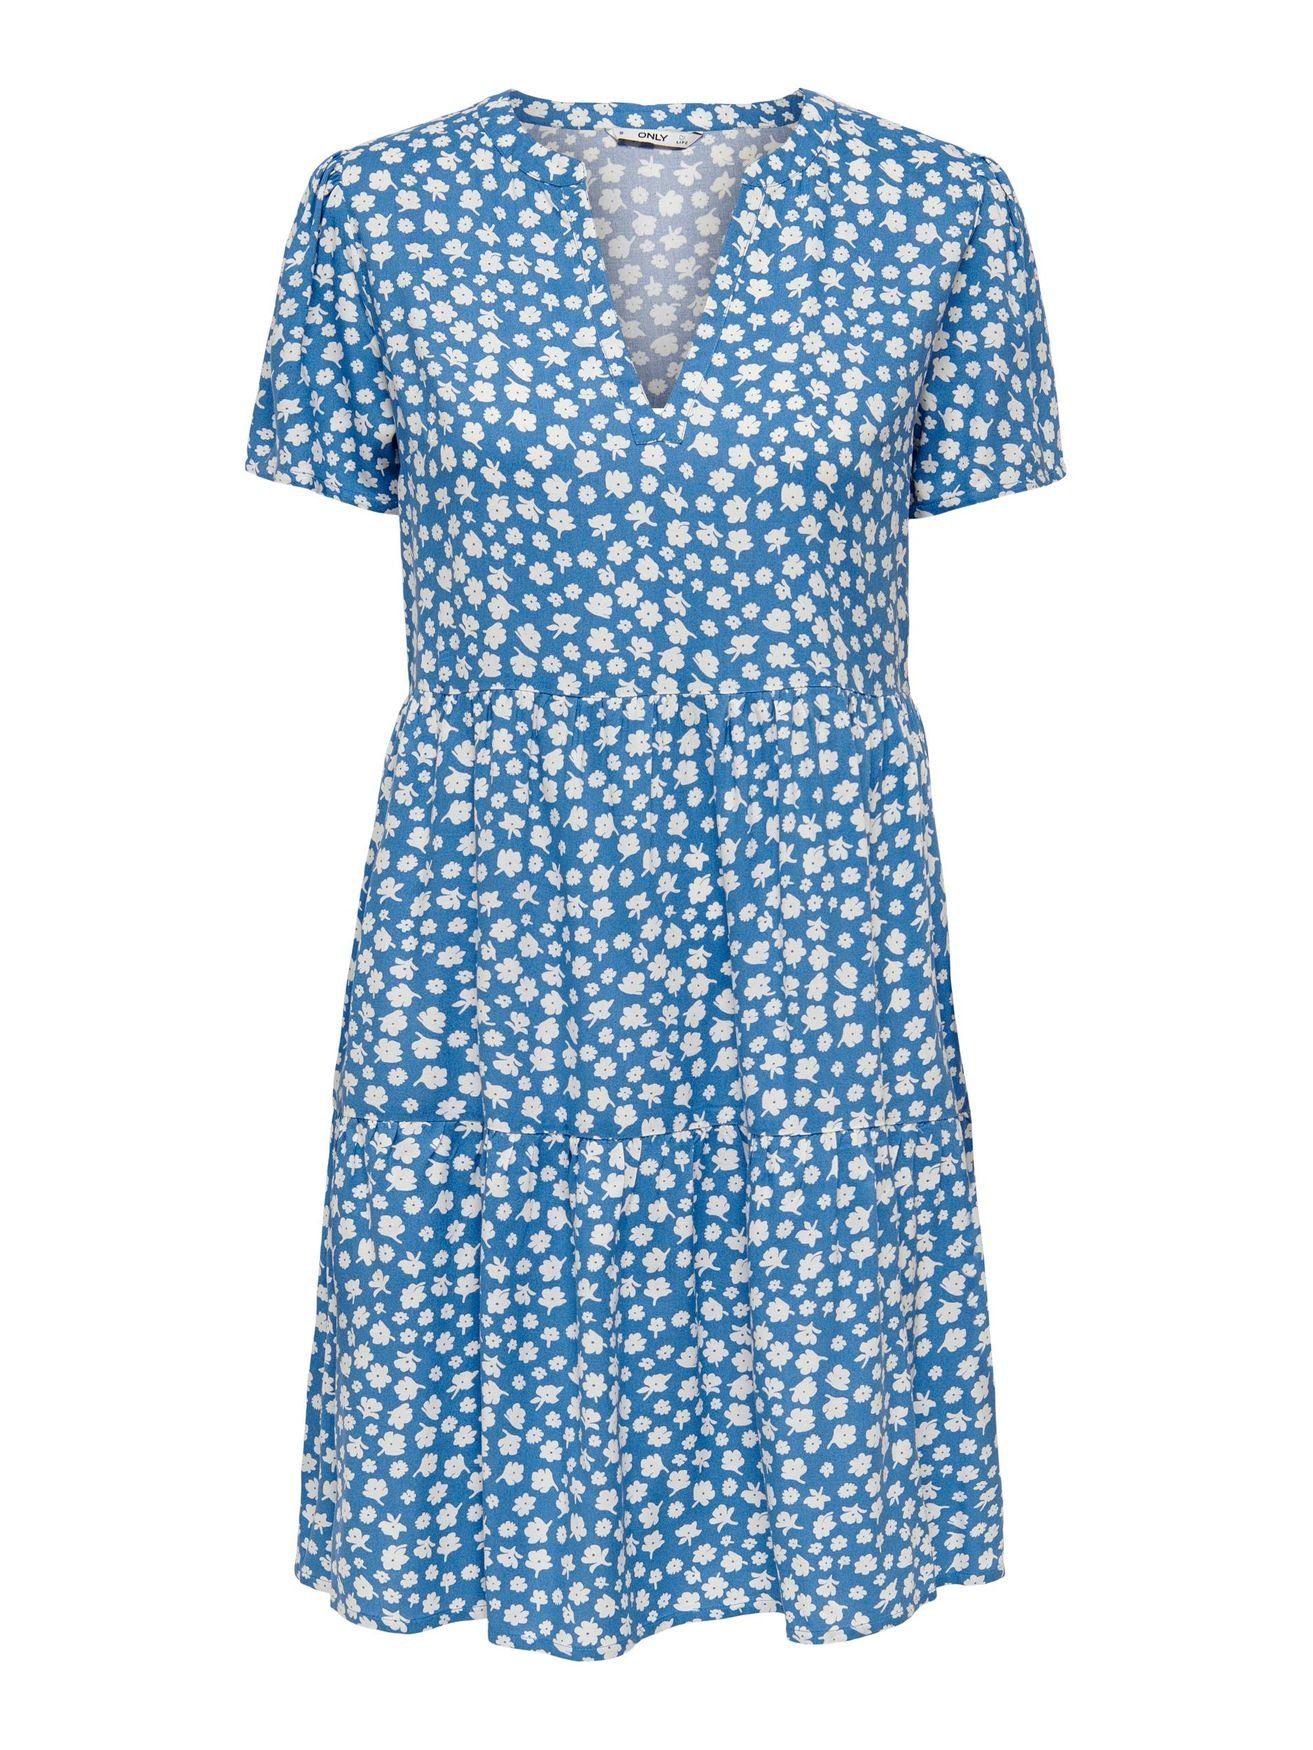 ONLY Shirtkleid Kurzes Blusen (knielang) Blau 4928 V-Ausschnitt Kleid ONLZALLY in